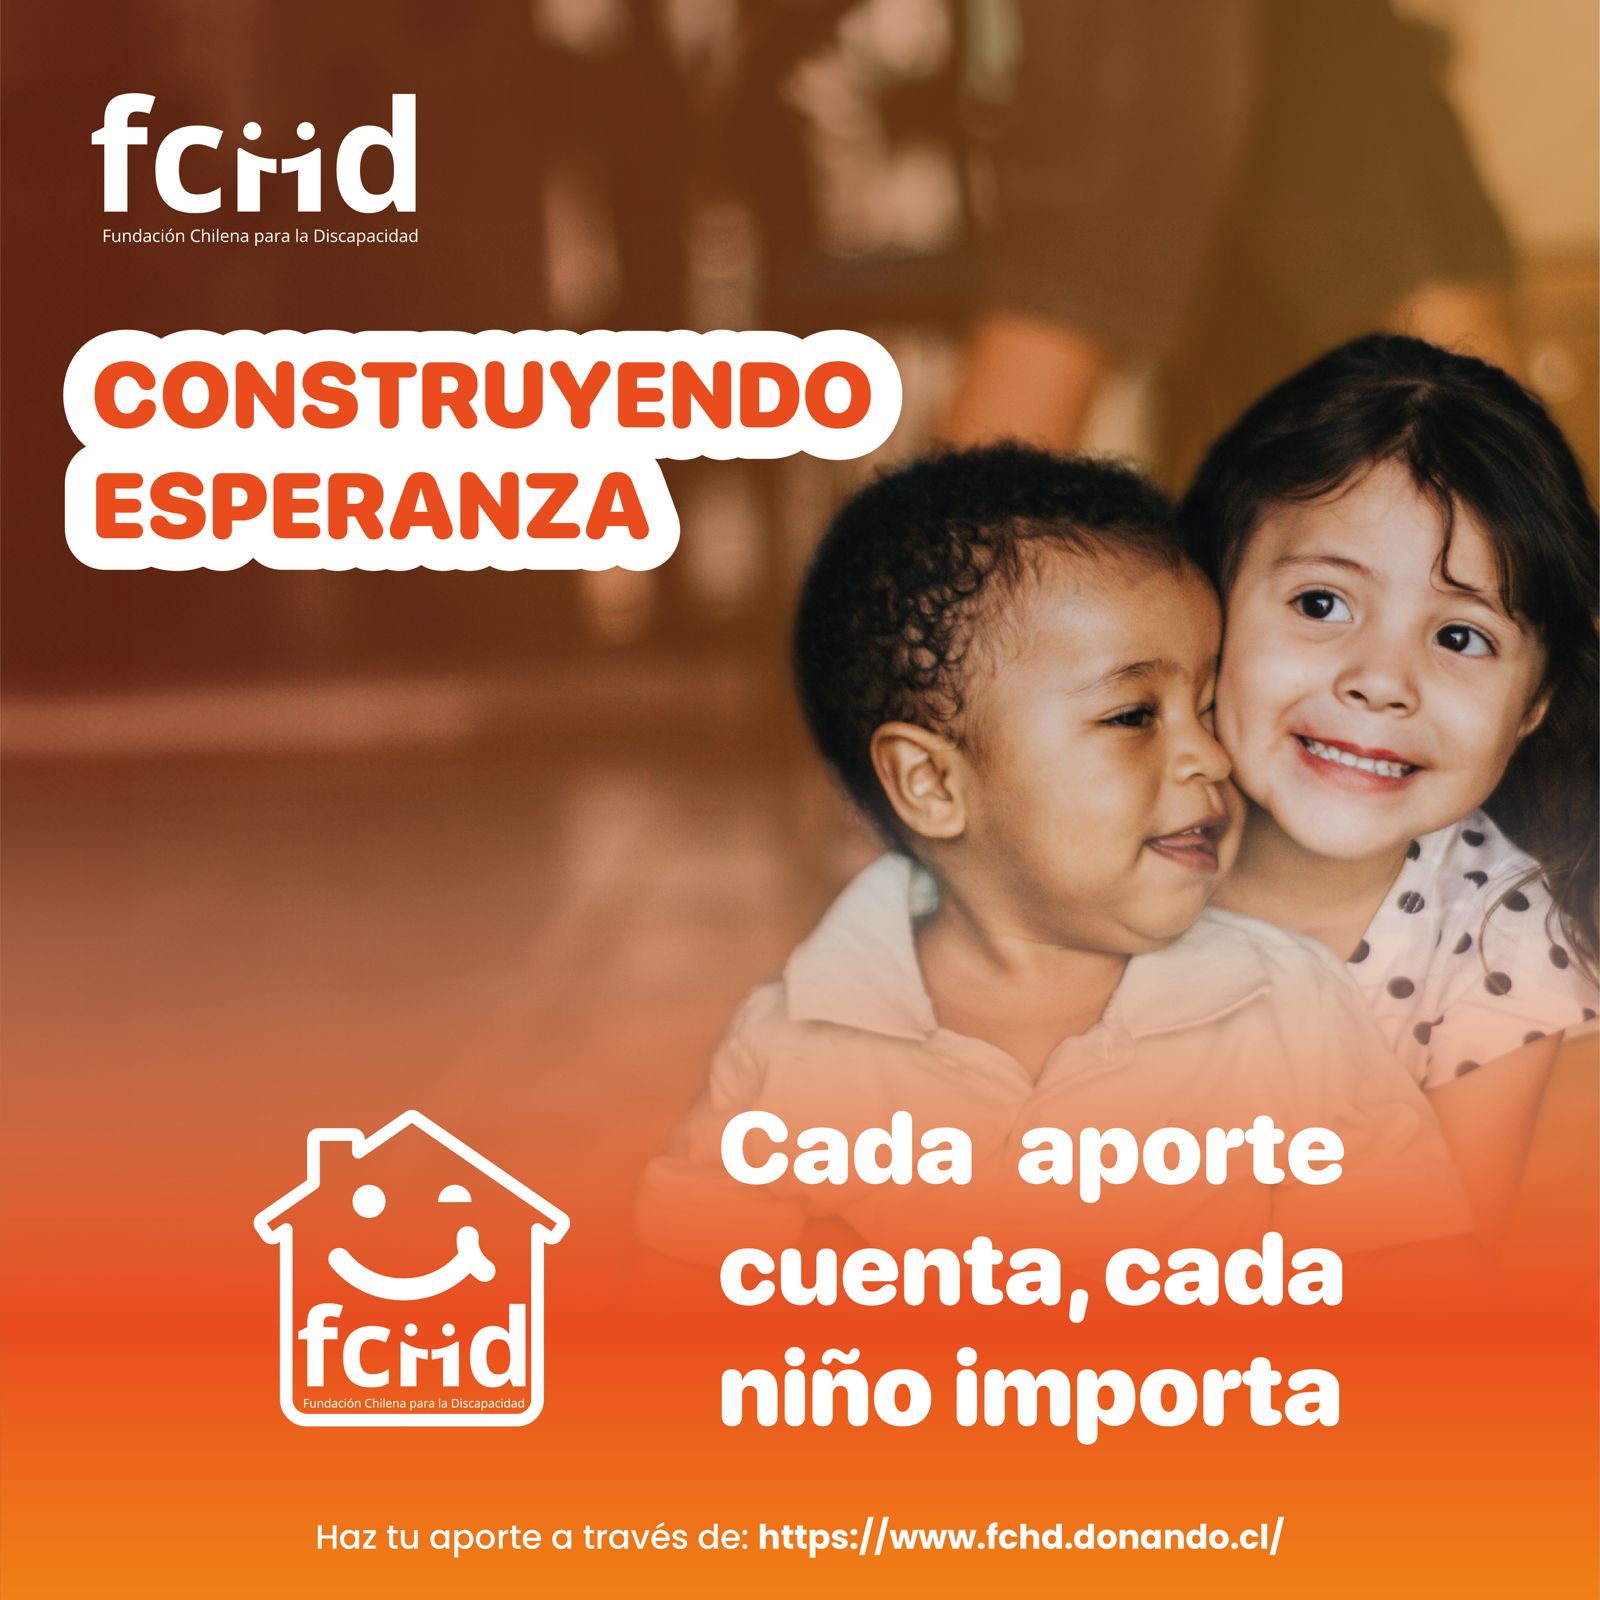 FCHD lanza campaña «Construyendo Esperanza» en beneficio de sus residencias para niños, niñas y adolescentes en situación de discapacidad y que han sido víctimas de vulneraciones de derechos